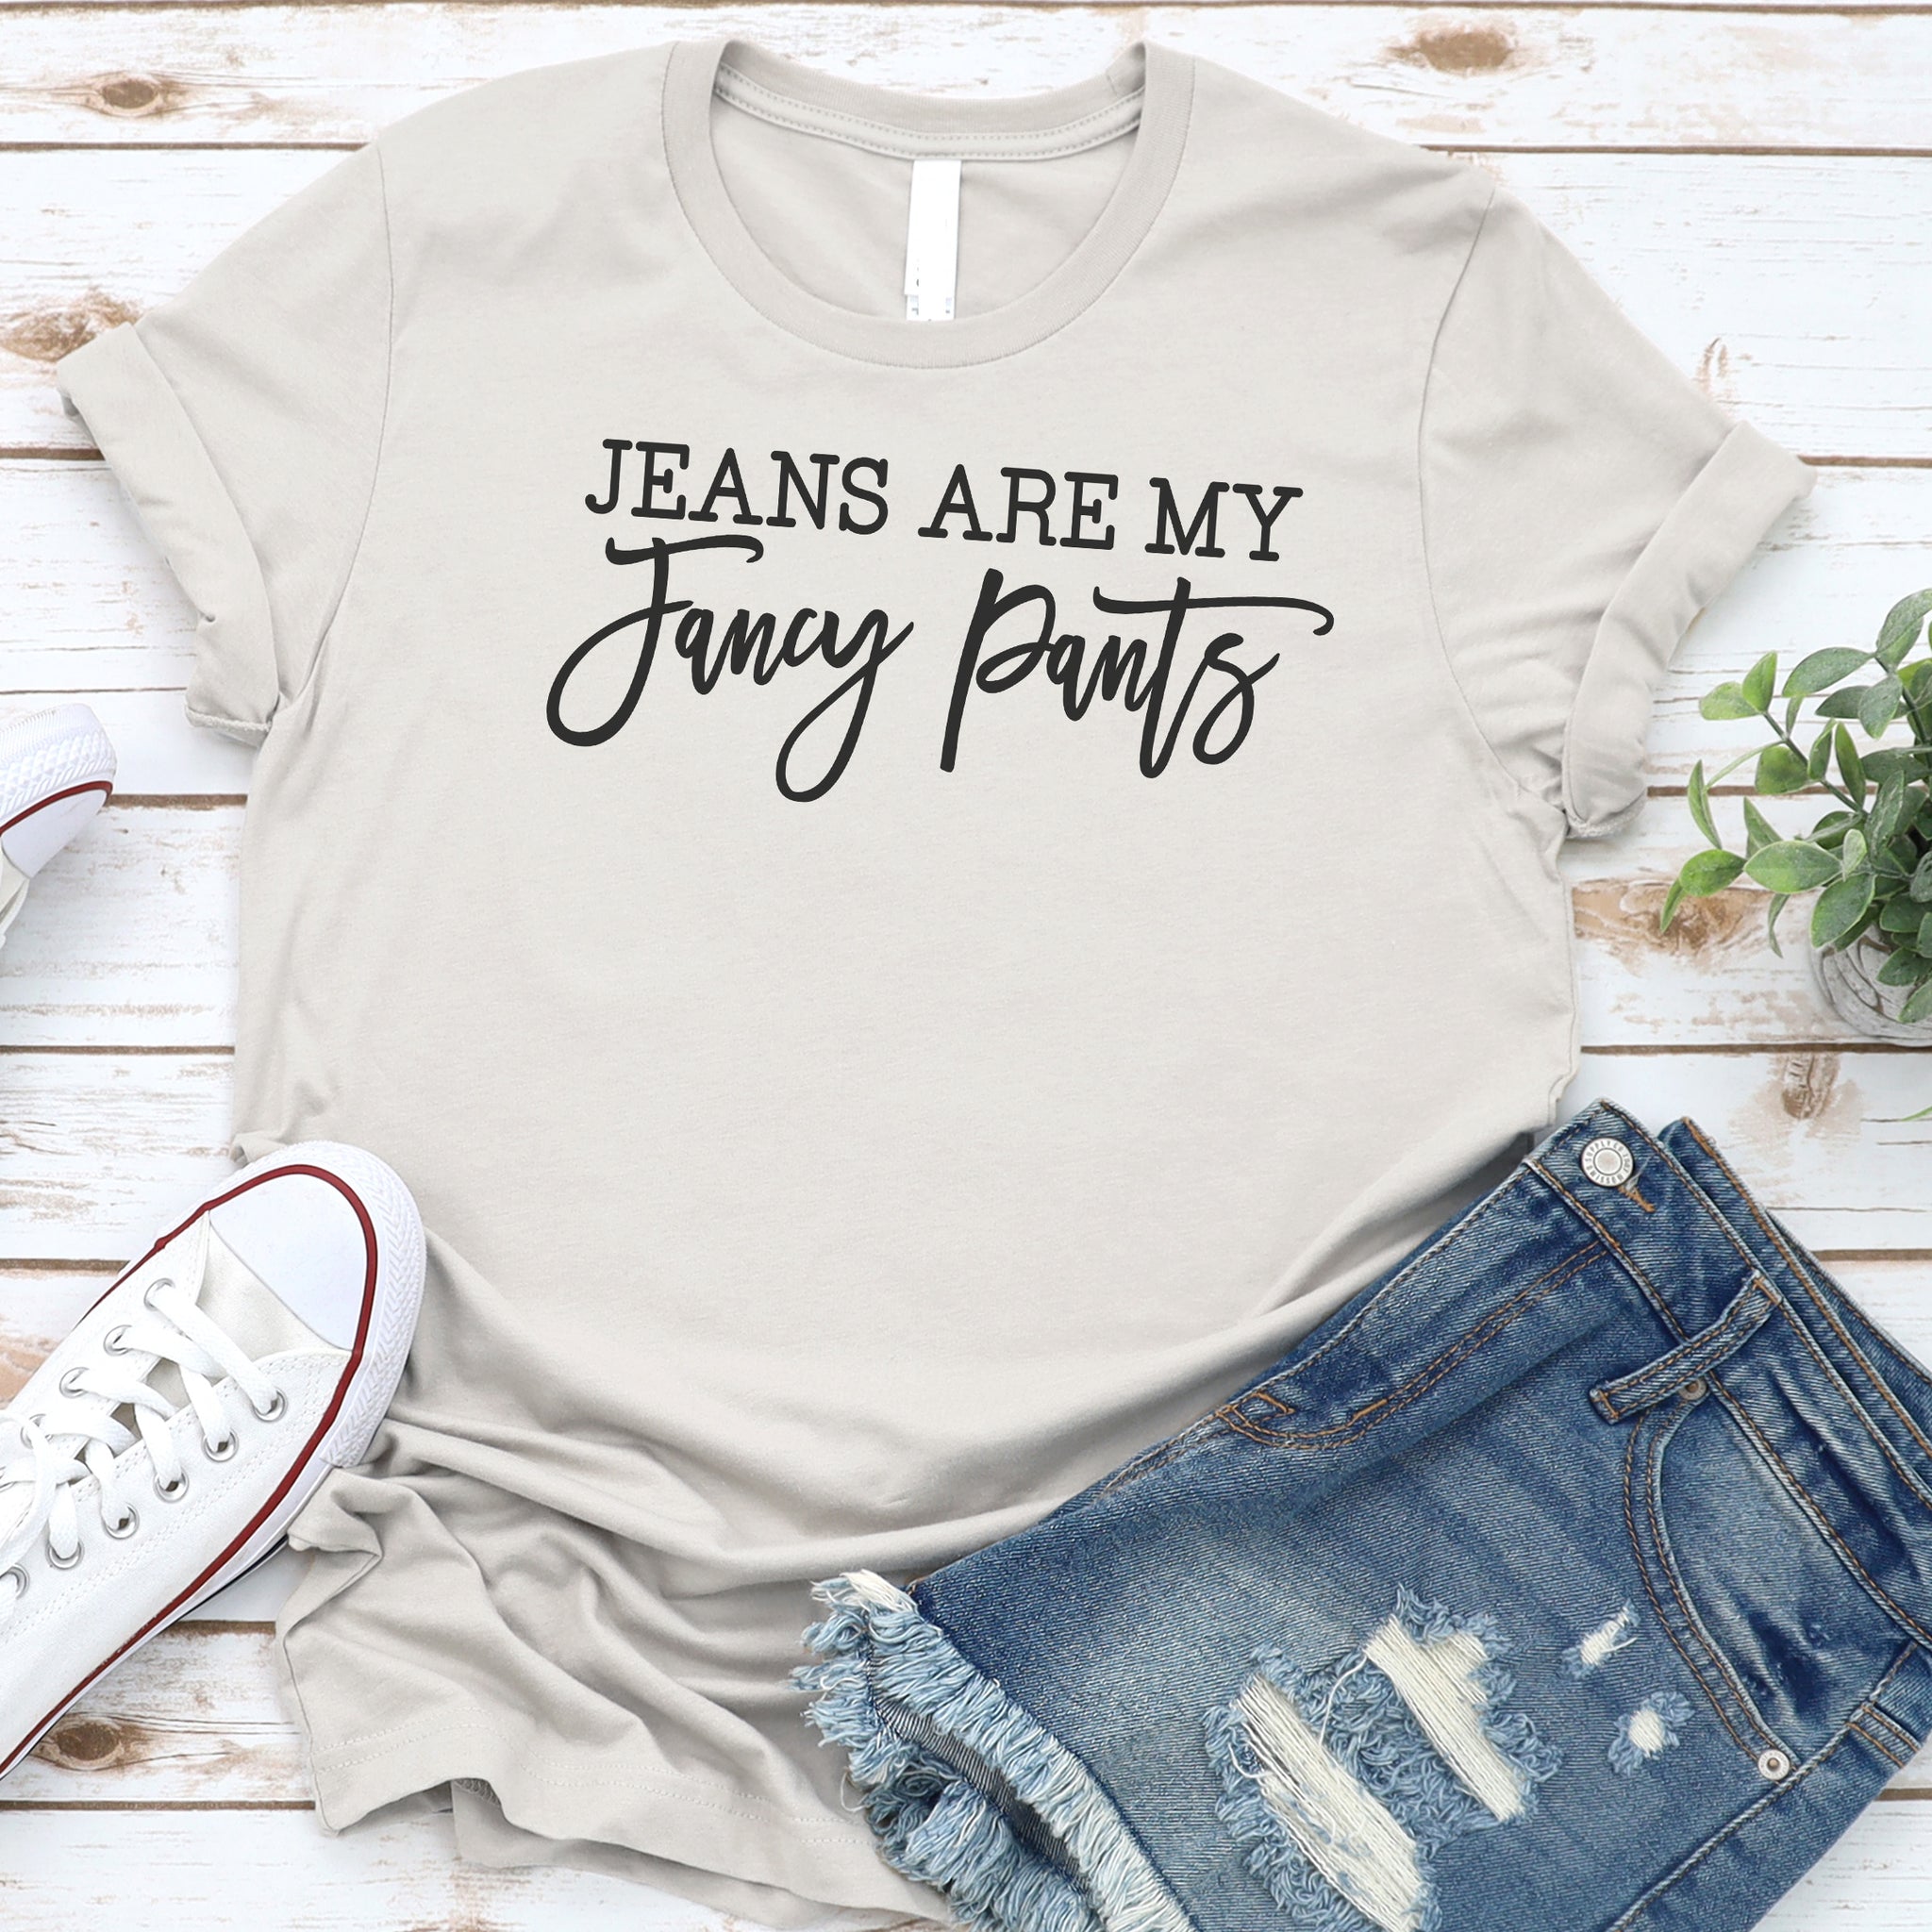 Crazy Pants, Good Jeans!